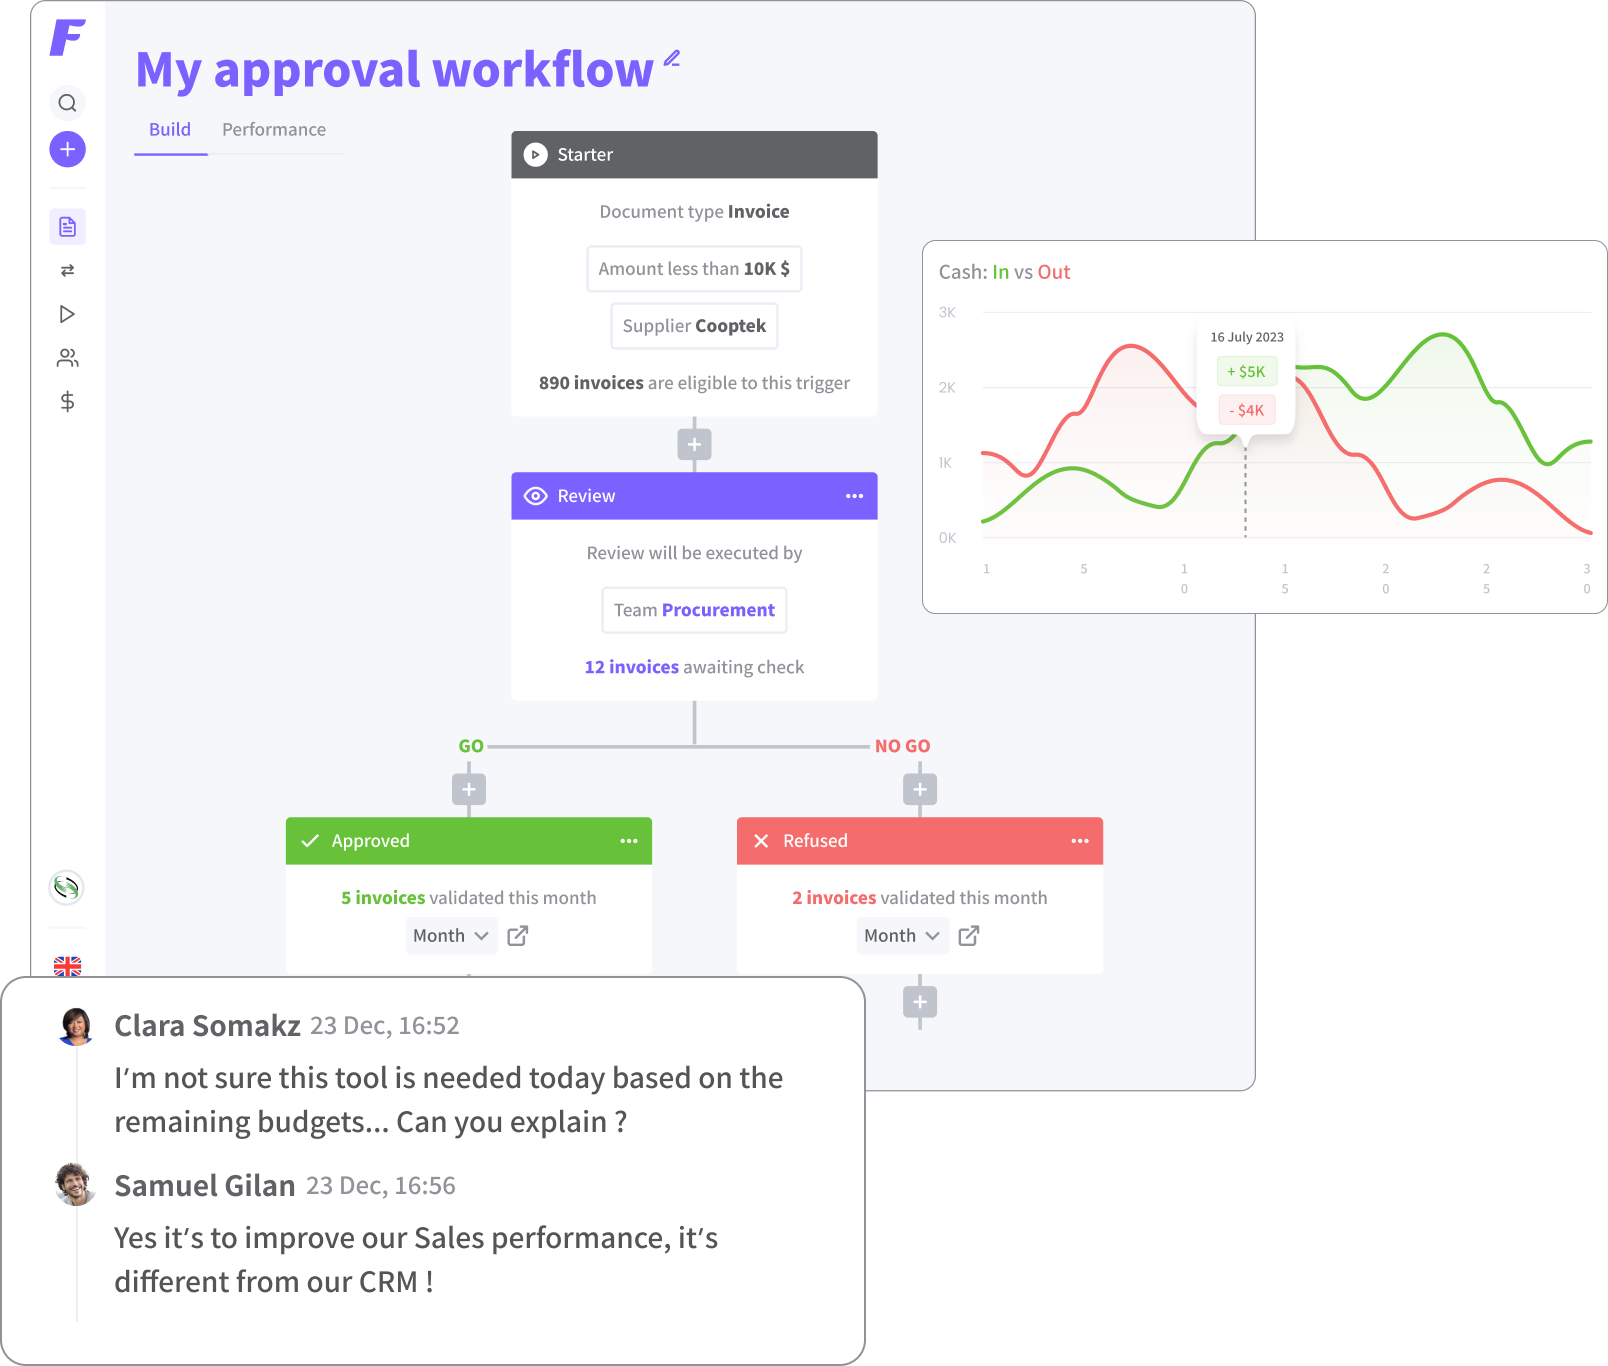 Flowie - My approval workflow